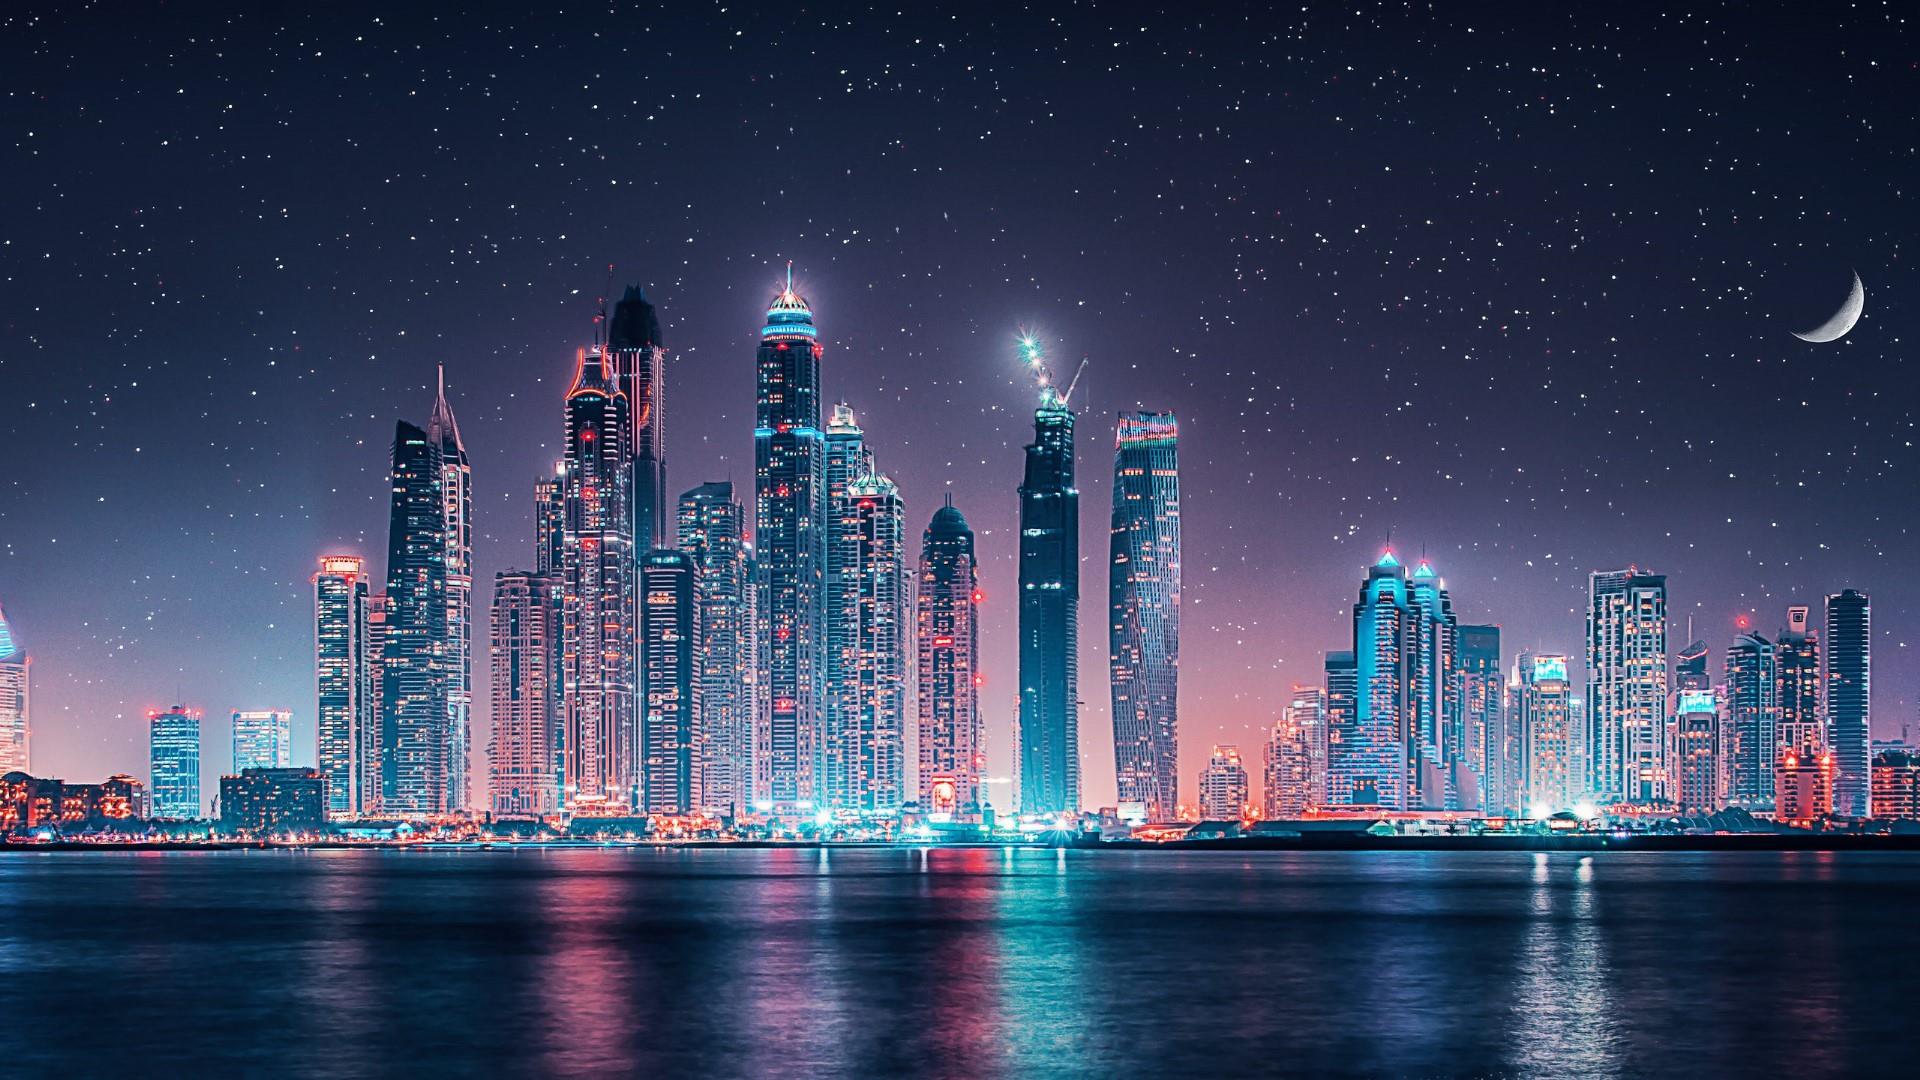 Night view of the city of Dubai - Dubai